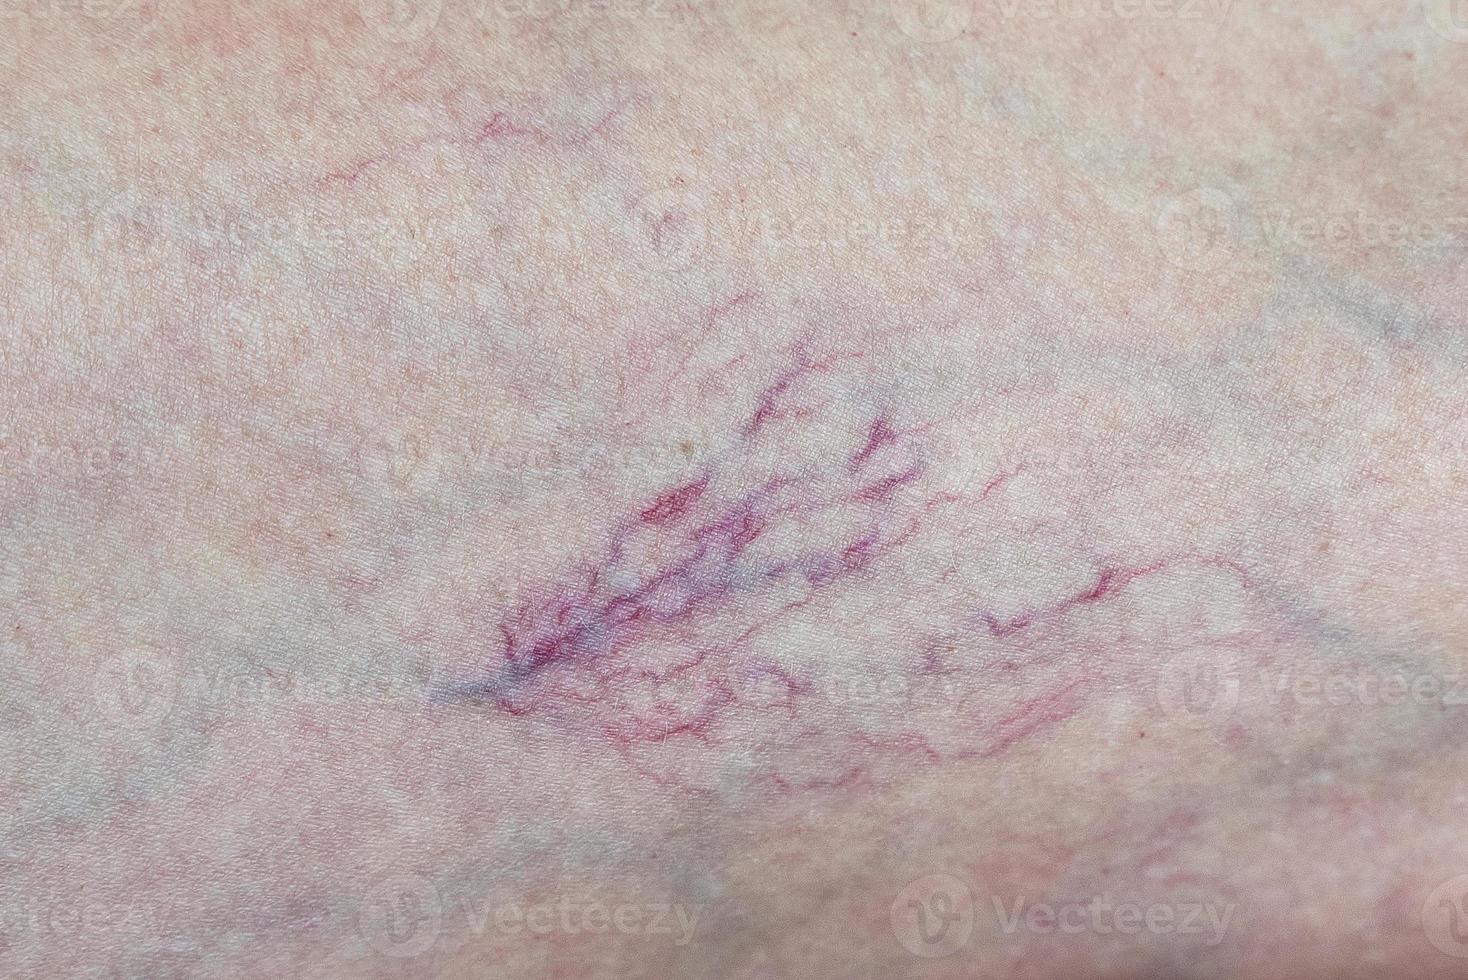 venas varicosas en el primer plano de la pierna. el concepto de la necesidad de la ayuda de un flebólogo. foto